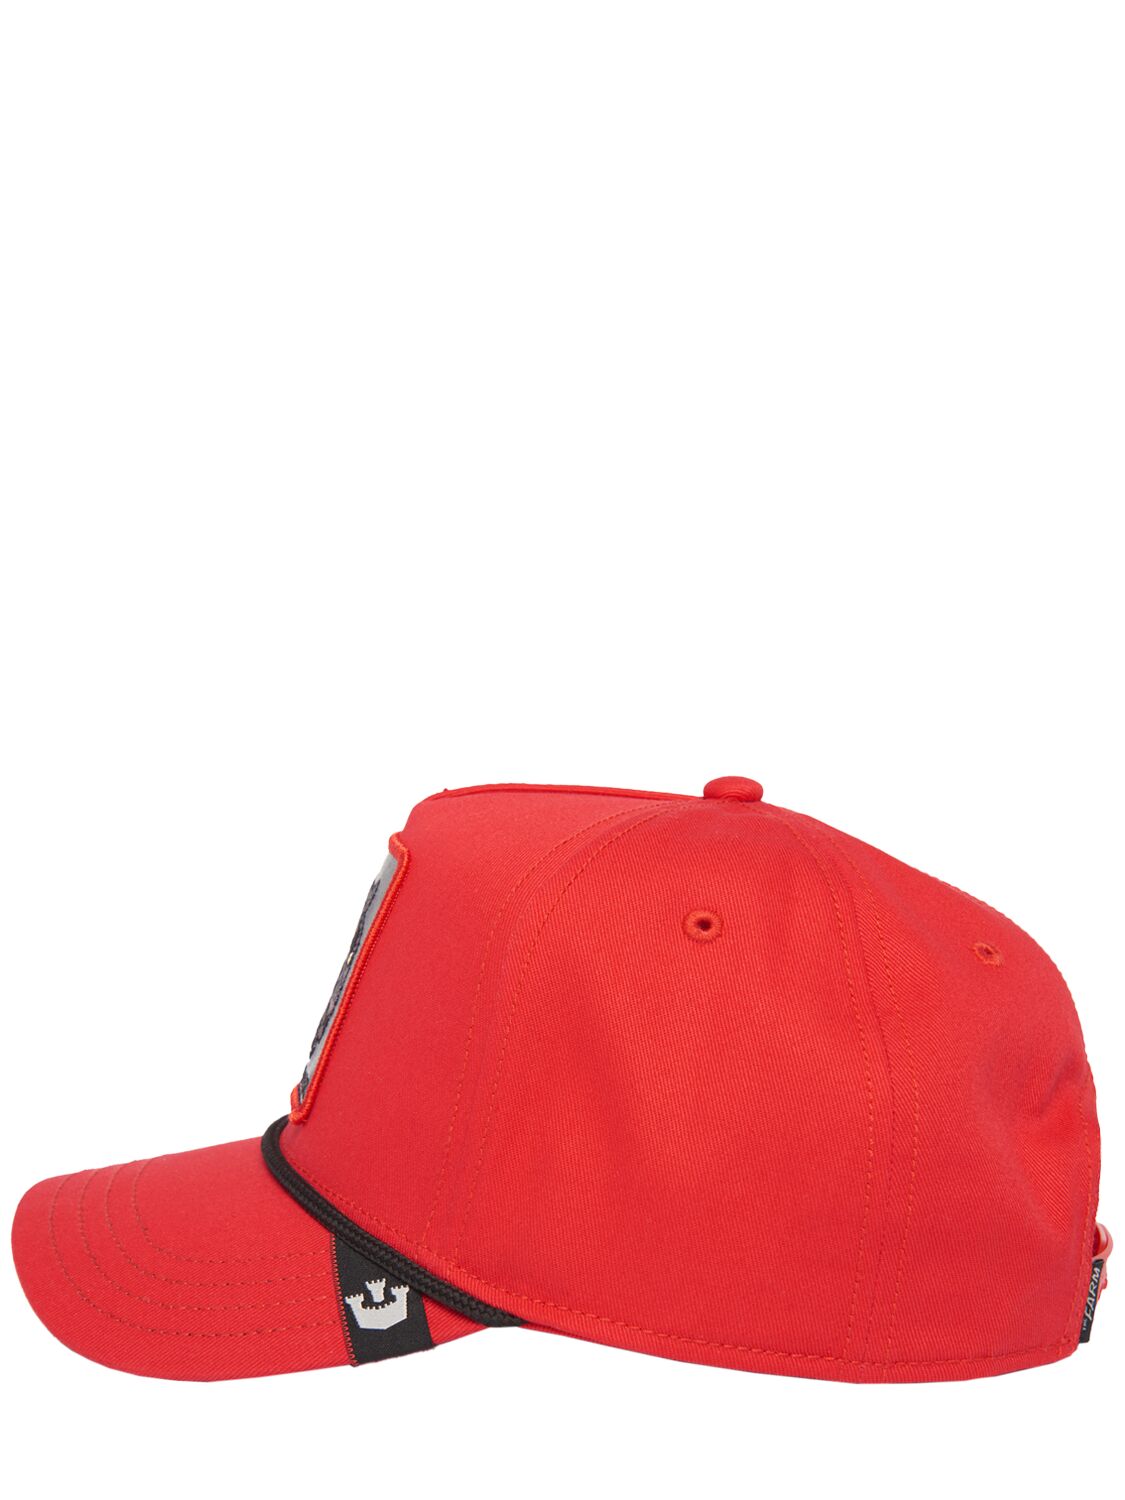 Shop Goorin Bros Panther 100 Baseball Cap In Red,black